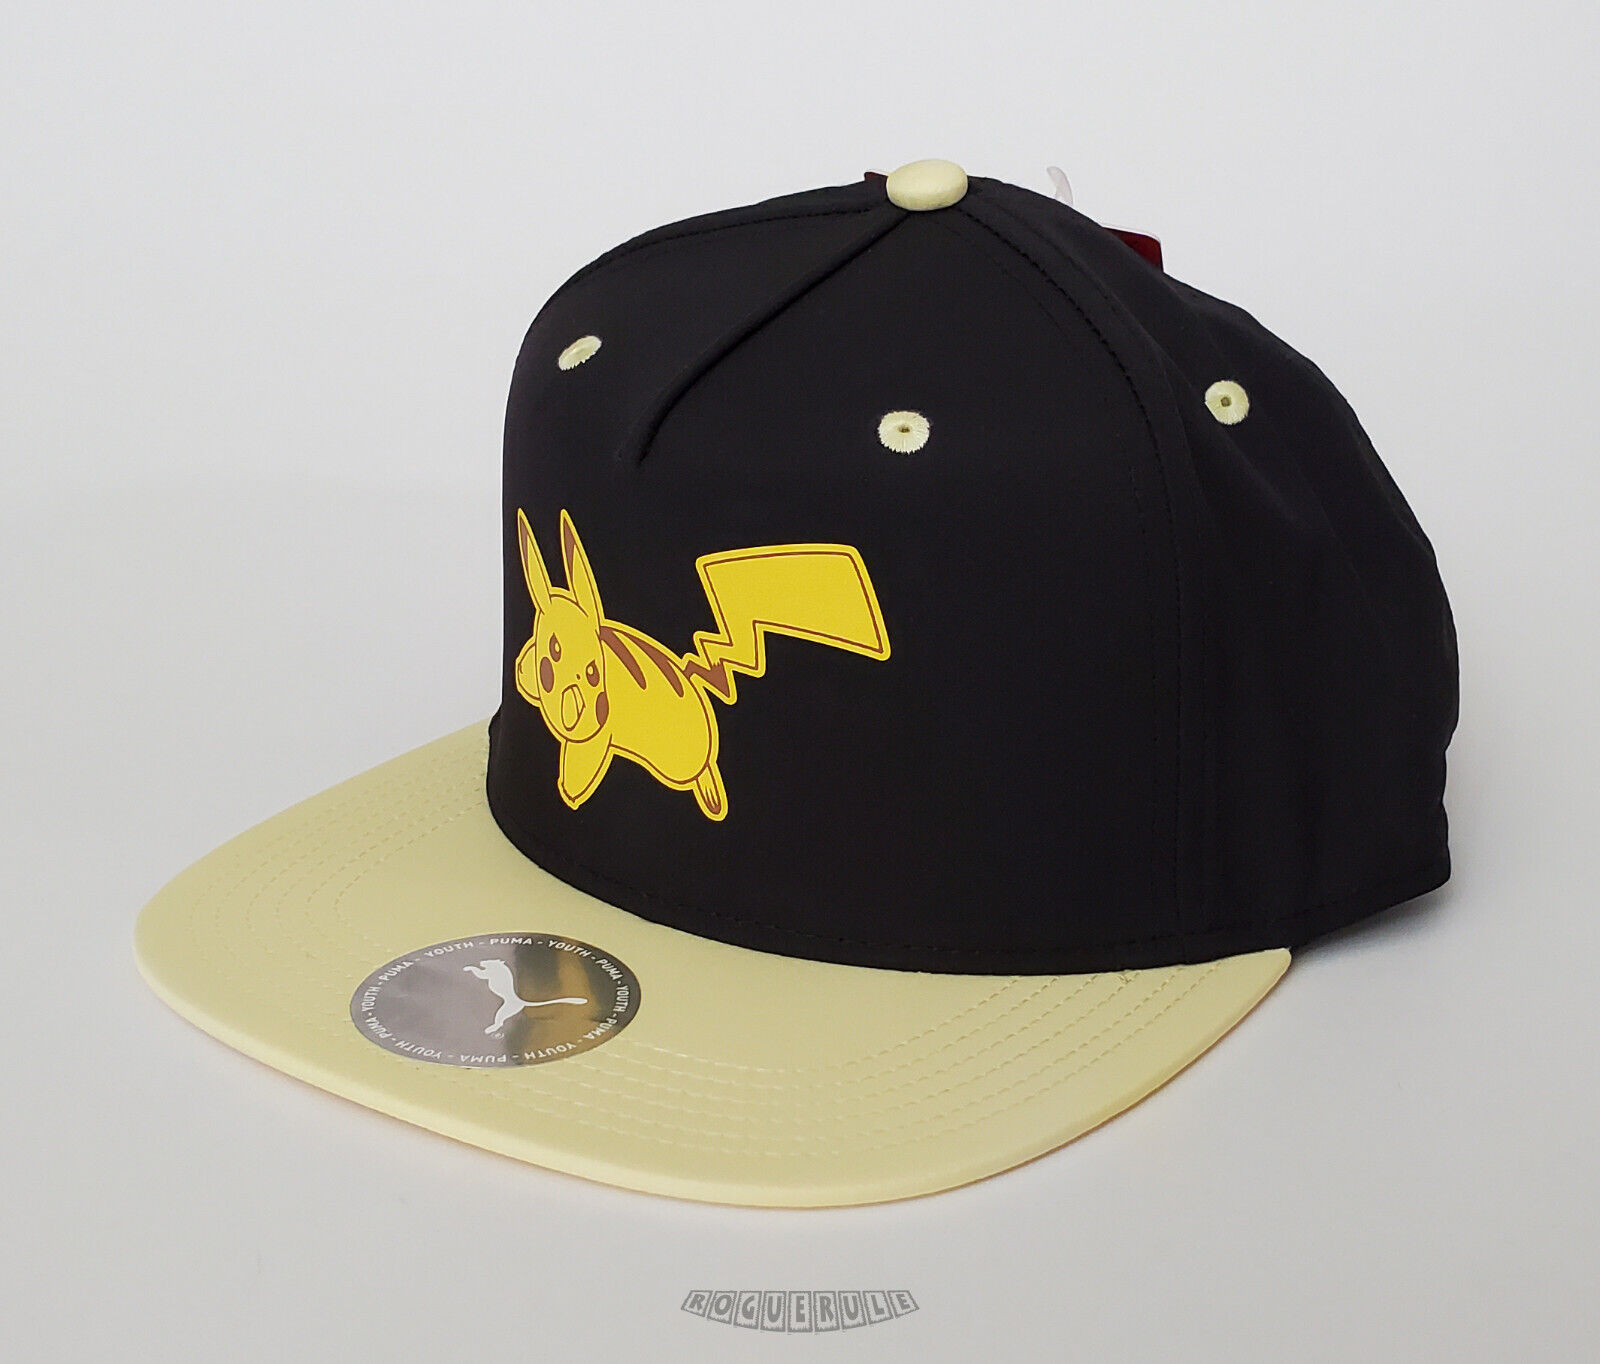 🚦Pokemon x Puma Pikachu Baseball Cap / Hat - Youth - NEW